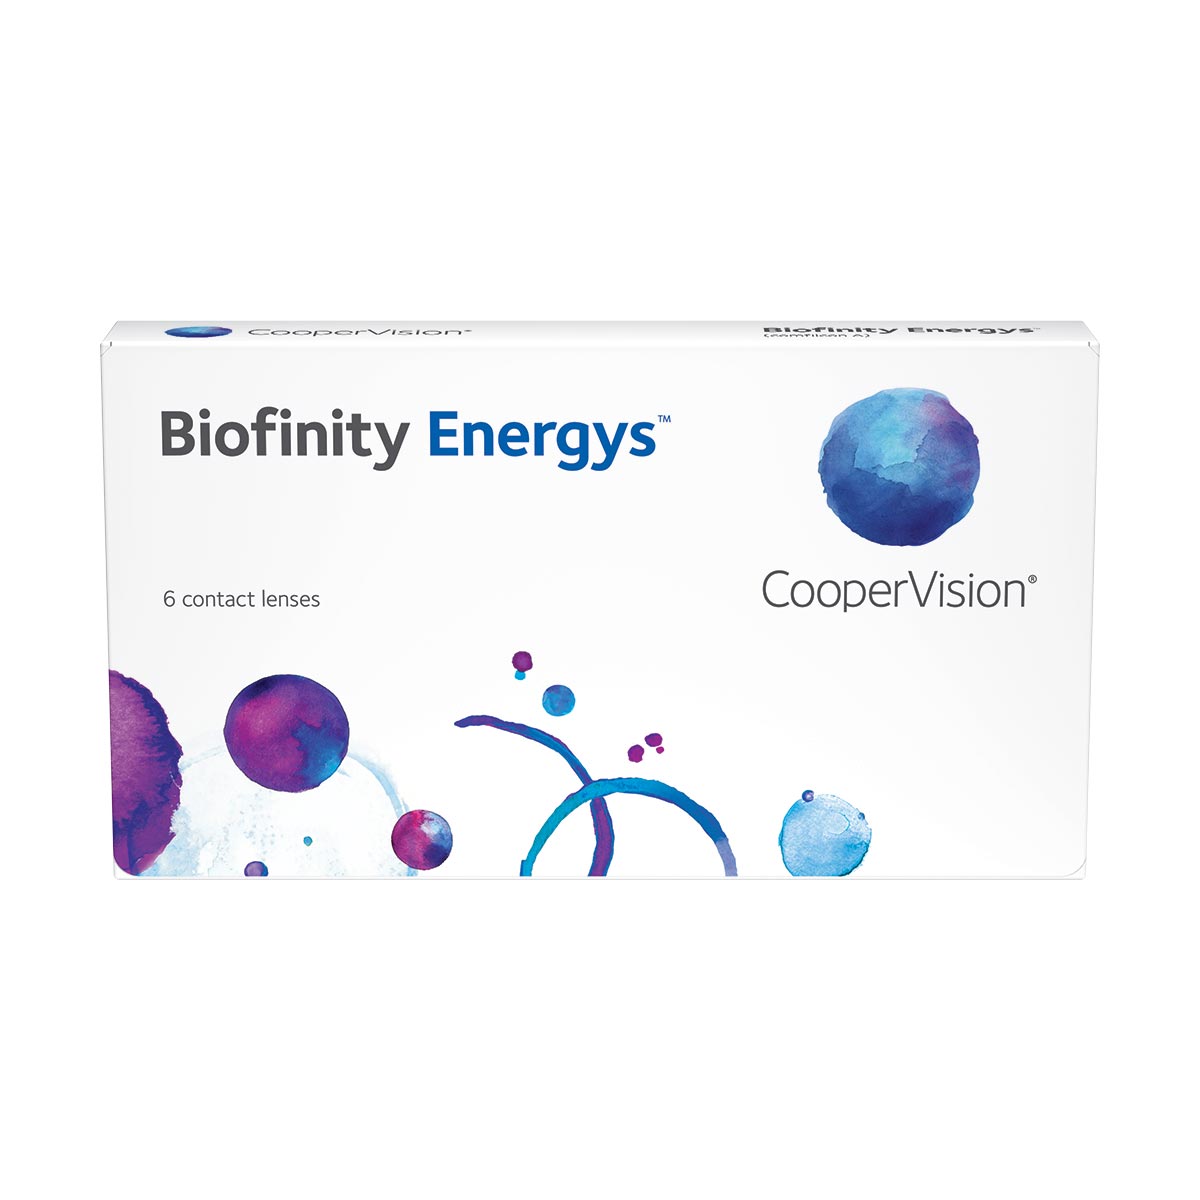 Biofinity XR Toric 6 lentes - Lentes de Contacto - Lentes de Contacto Mensais